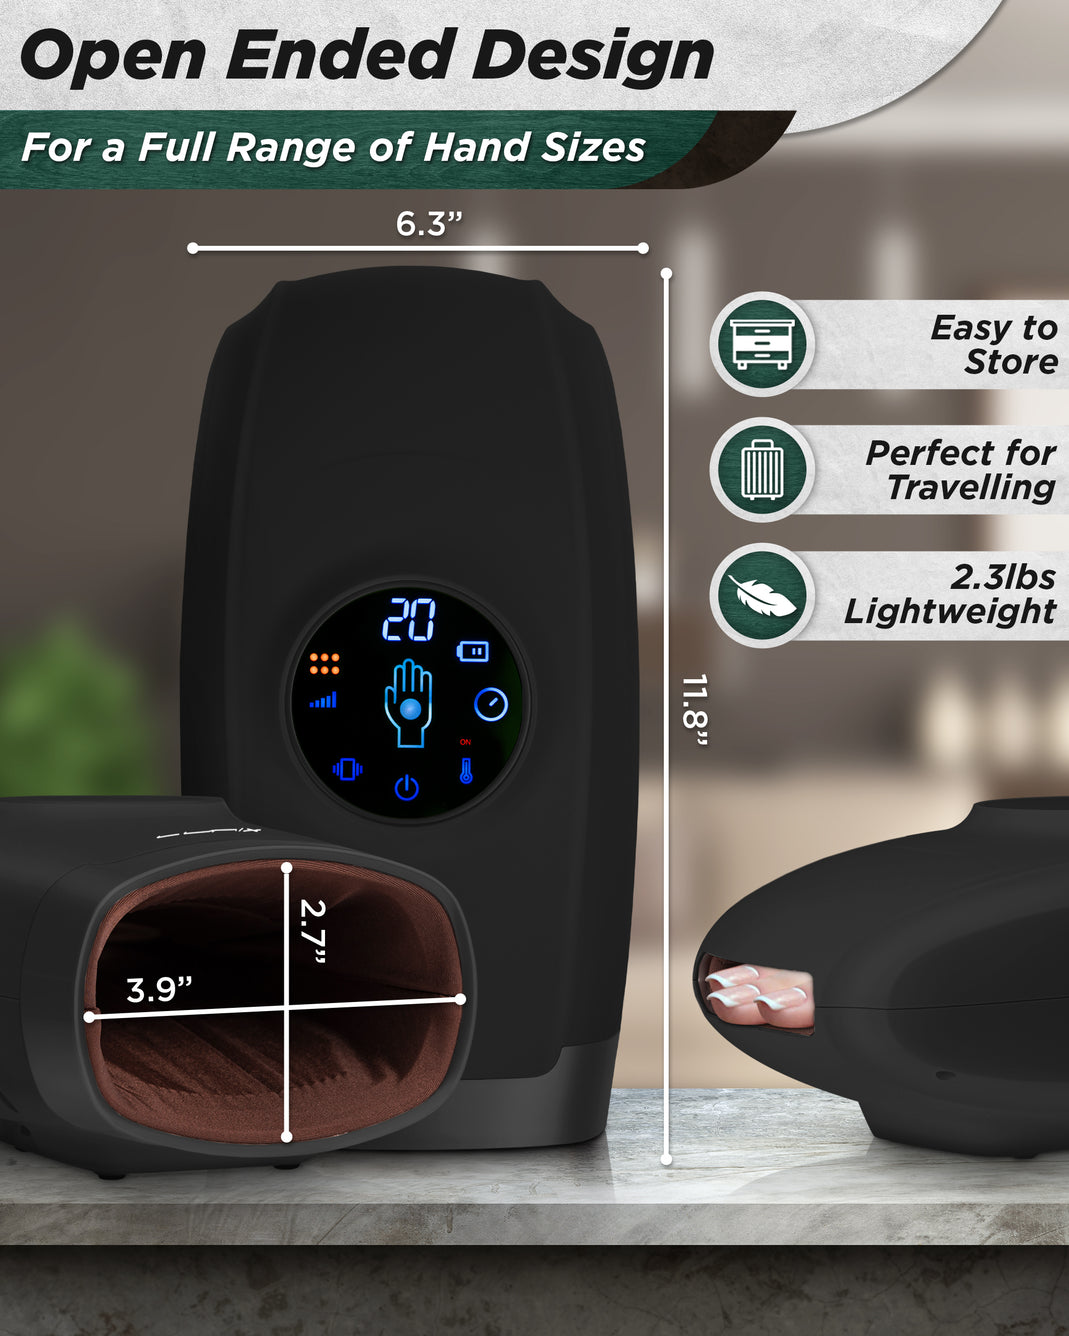 Lunix LX7 Touchscreen Hand Massager Black